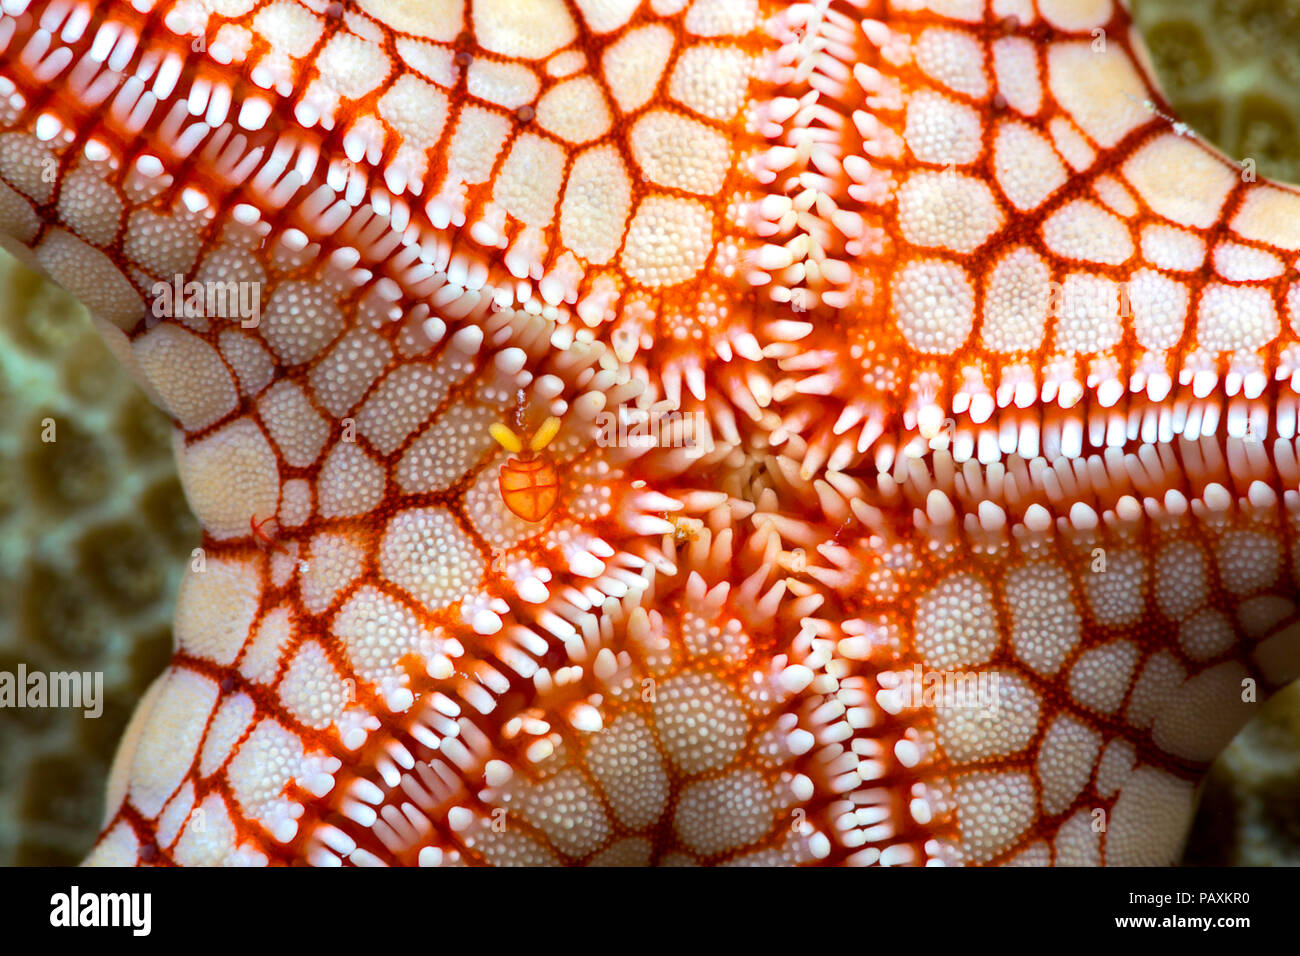 Una mujer simbiótica, copépodos Stellicola sp. puede verse justo a la izquierda del centro en este collar seastar, Fromia monilis, Yap, Micronesia. Foto de stock